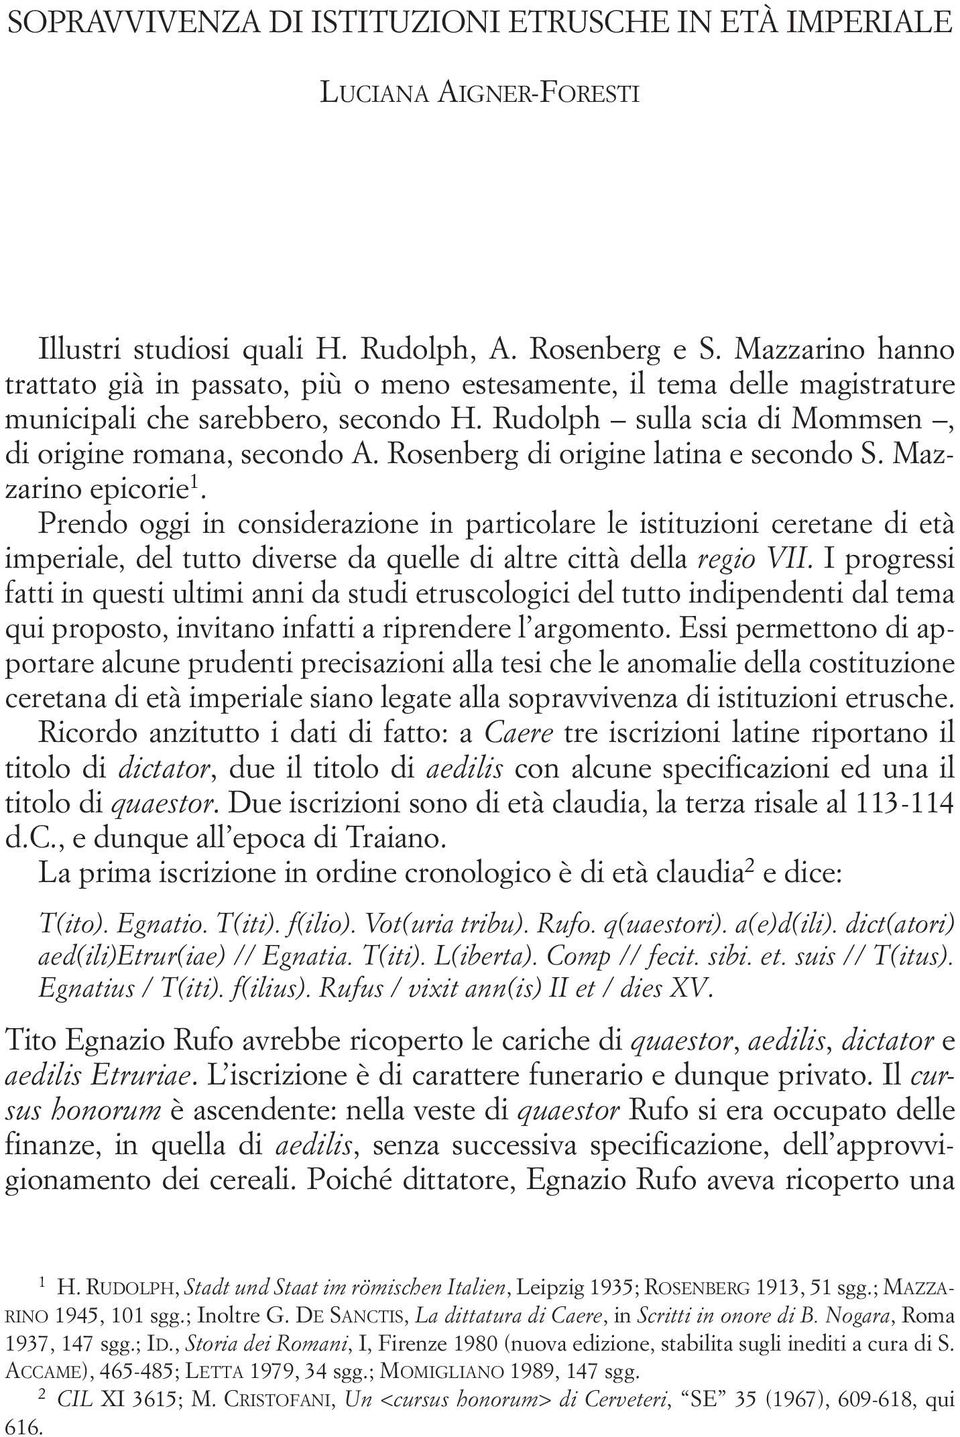 Rosenberg di origine latina e secondo S. Mazzarino epicorie.